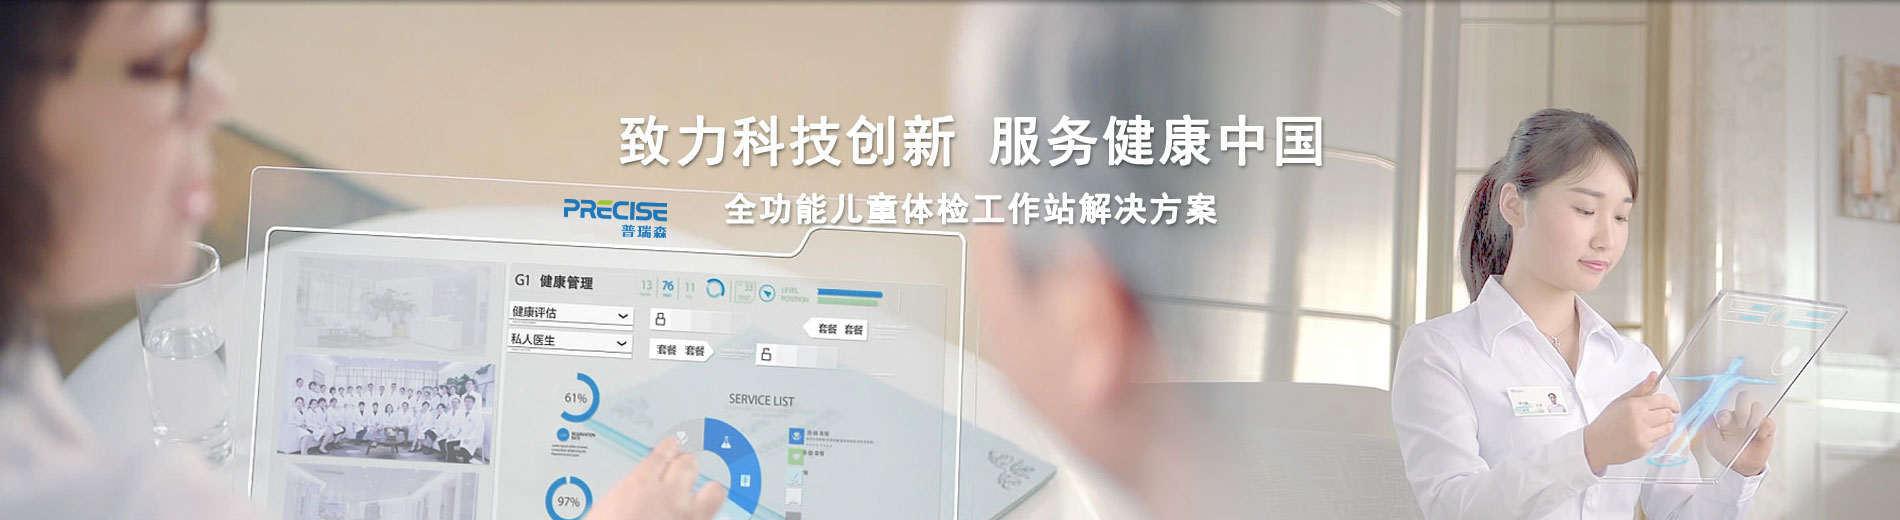 致力科技创新、服务健康中国；全功能儿童体检工作站解决方案